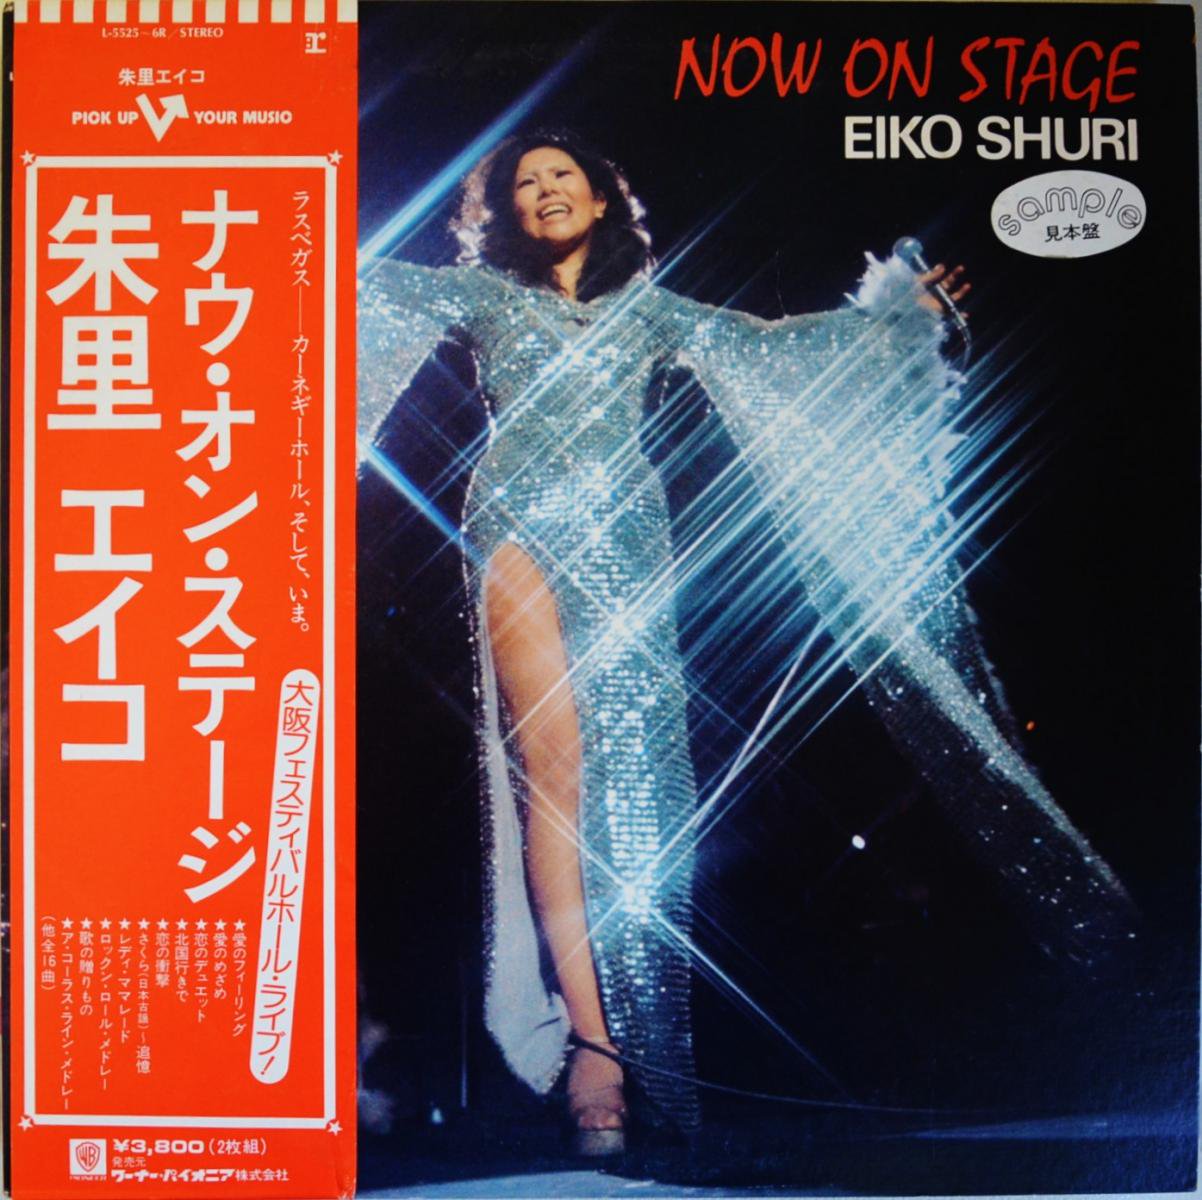 朱里エイコ EIKO SHURI / ナウ・オン・ステージ NOW ON STAGE (LP 